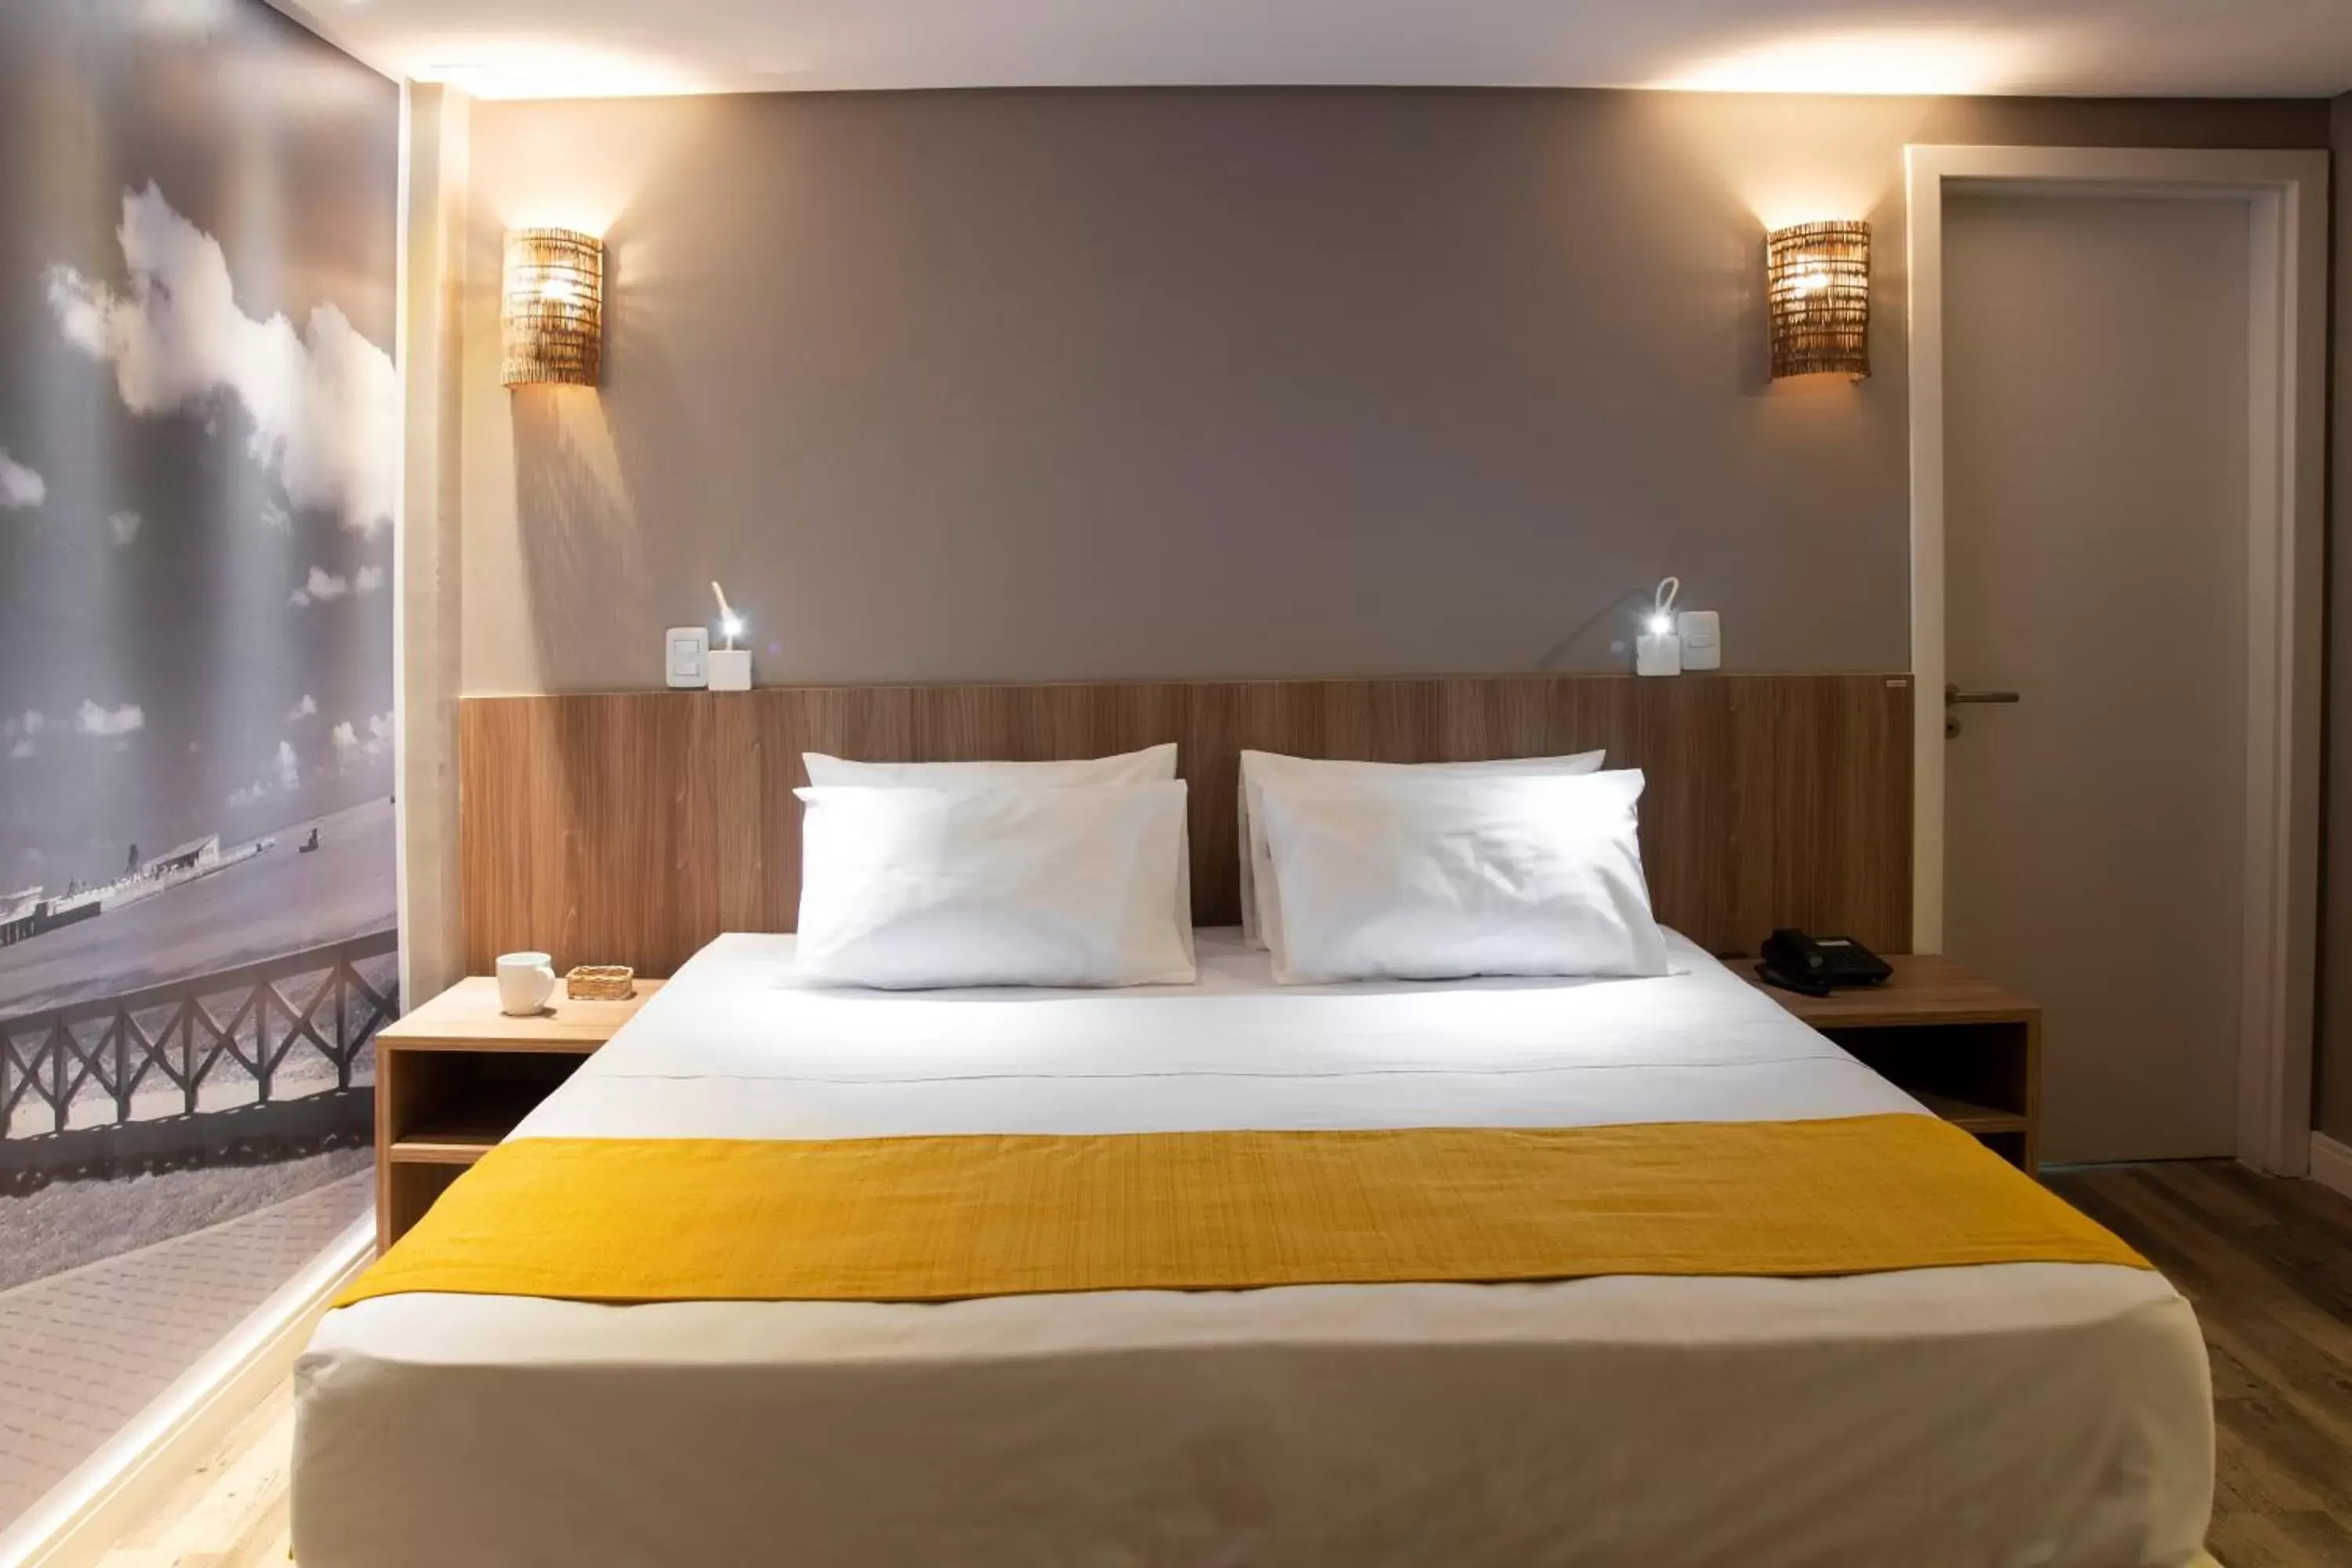 Bed in Comfort Hotel Maceió